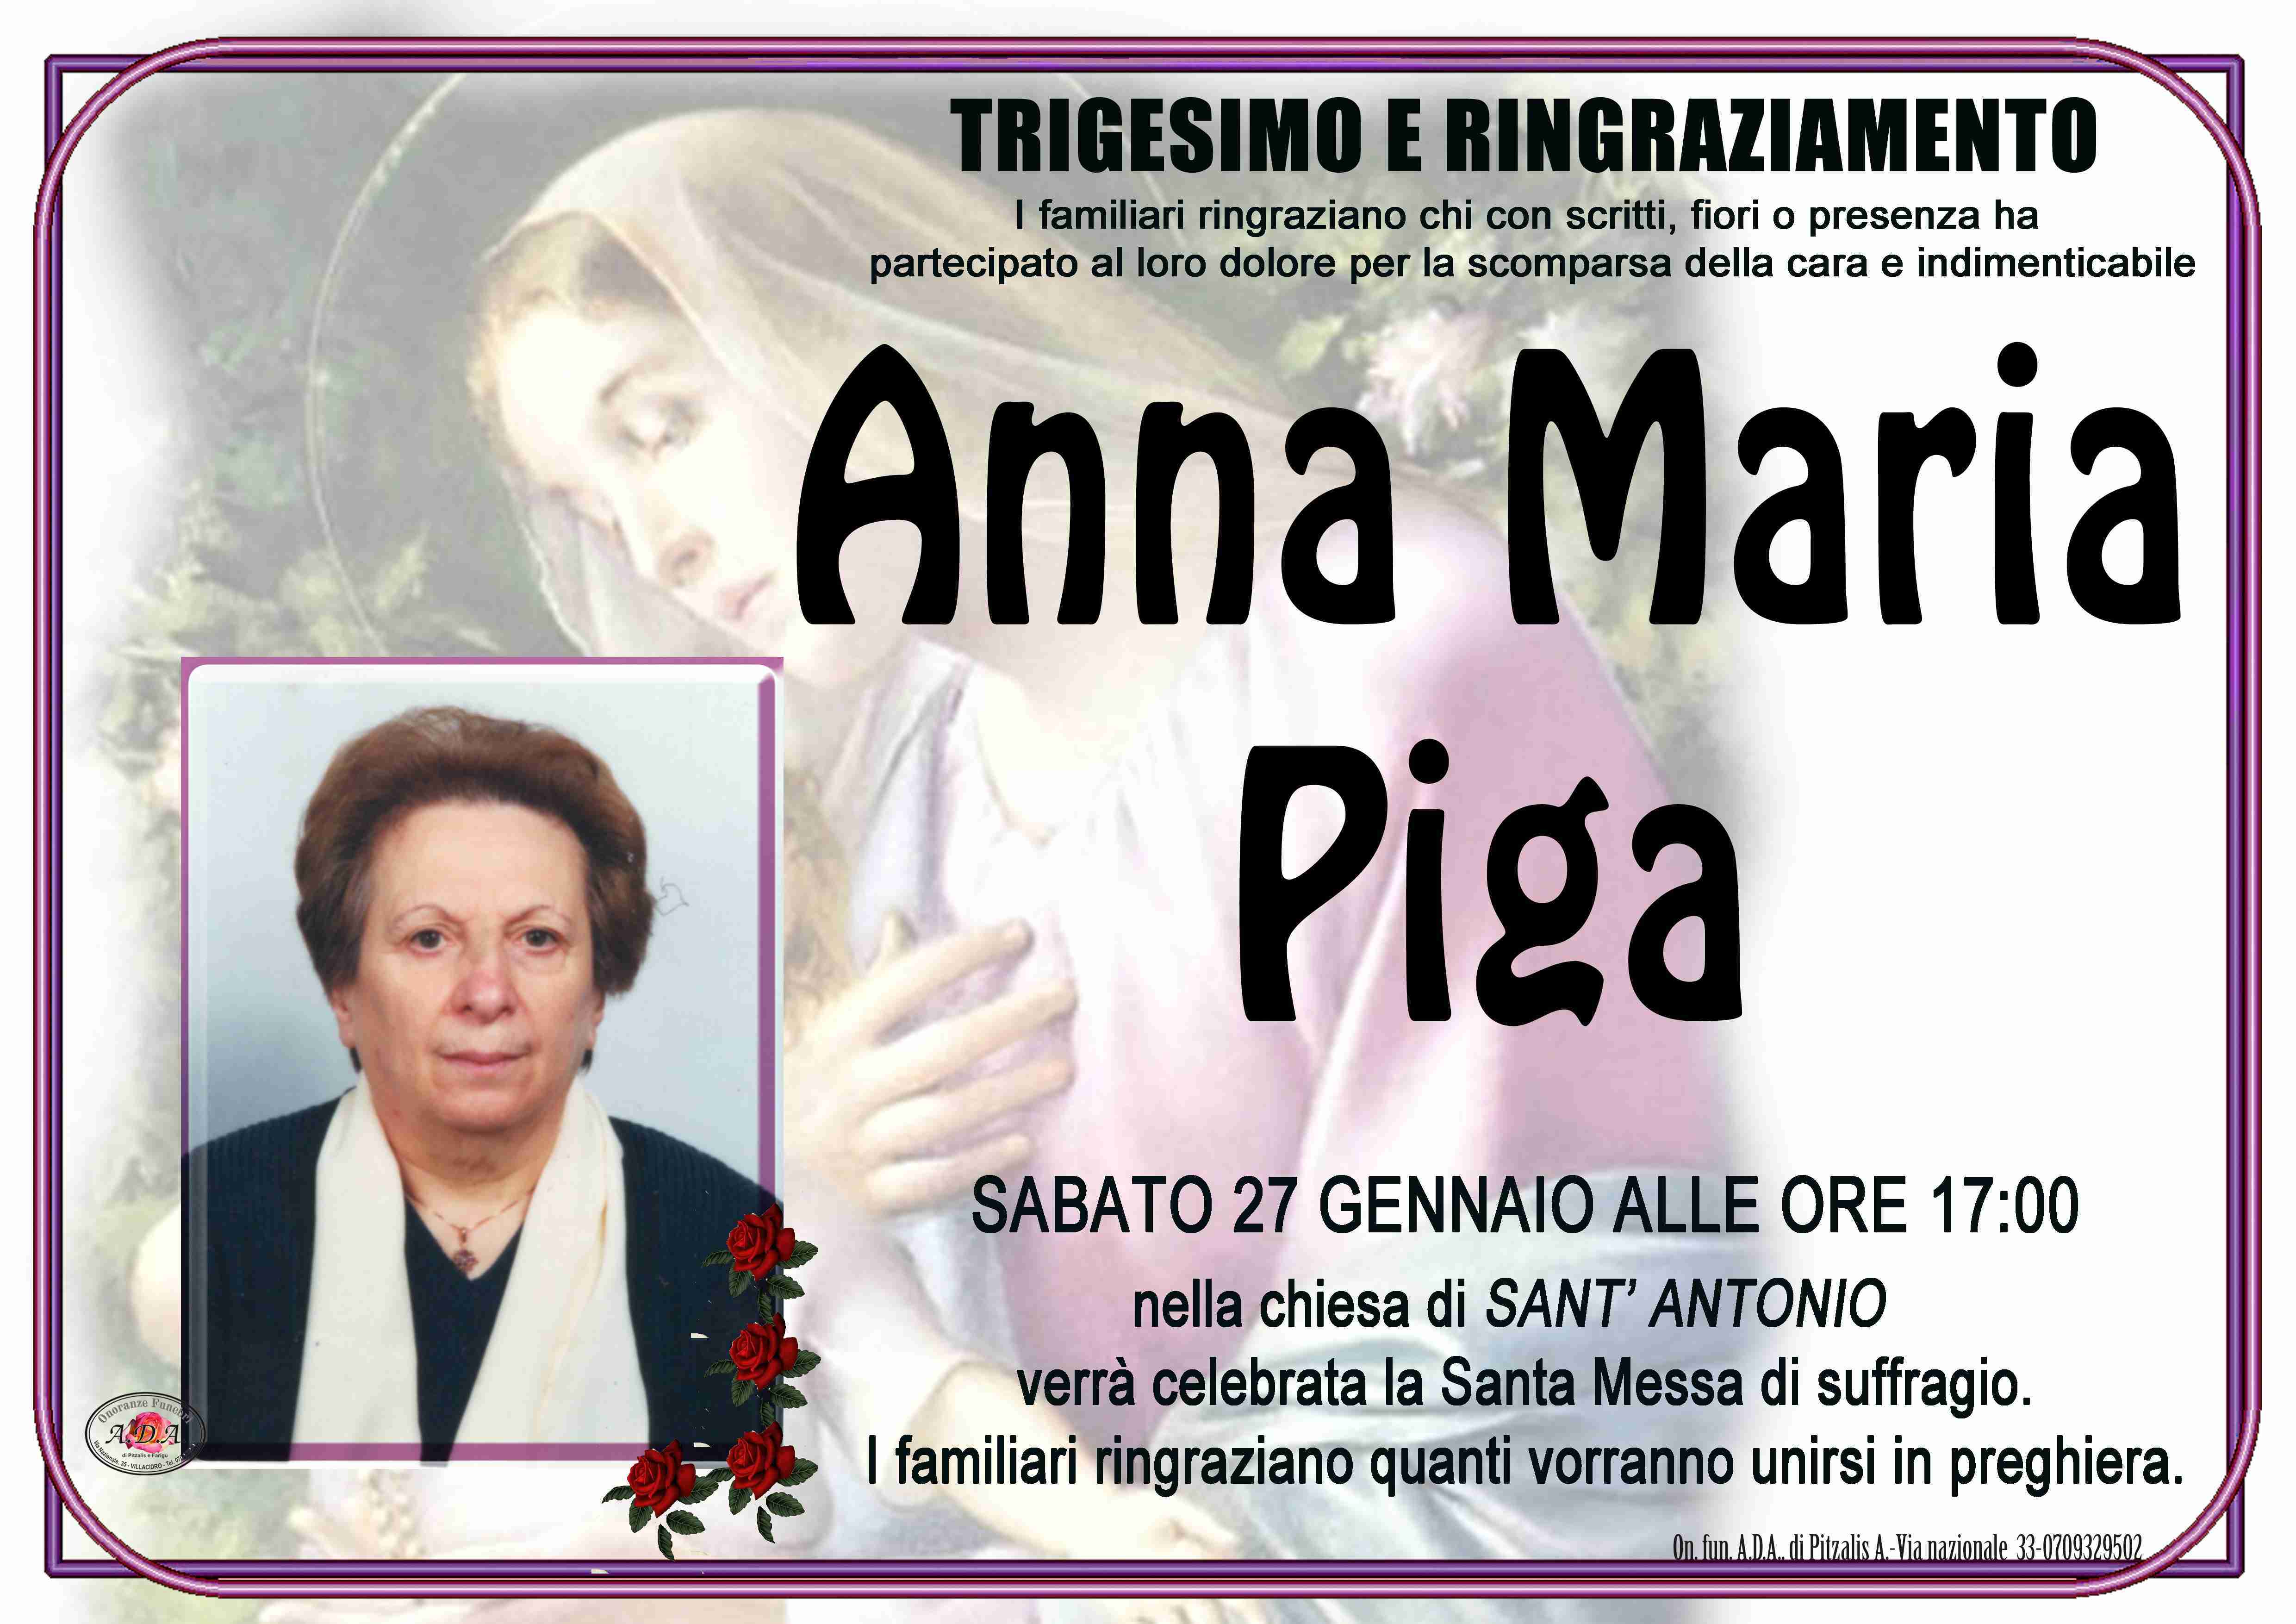 Anna Maria Emilia Piga